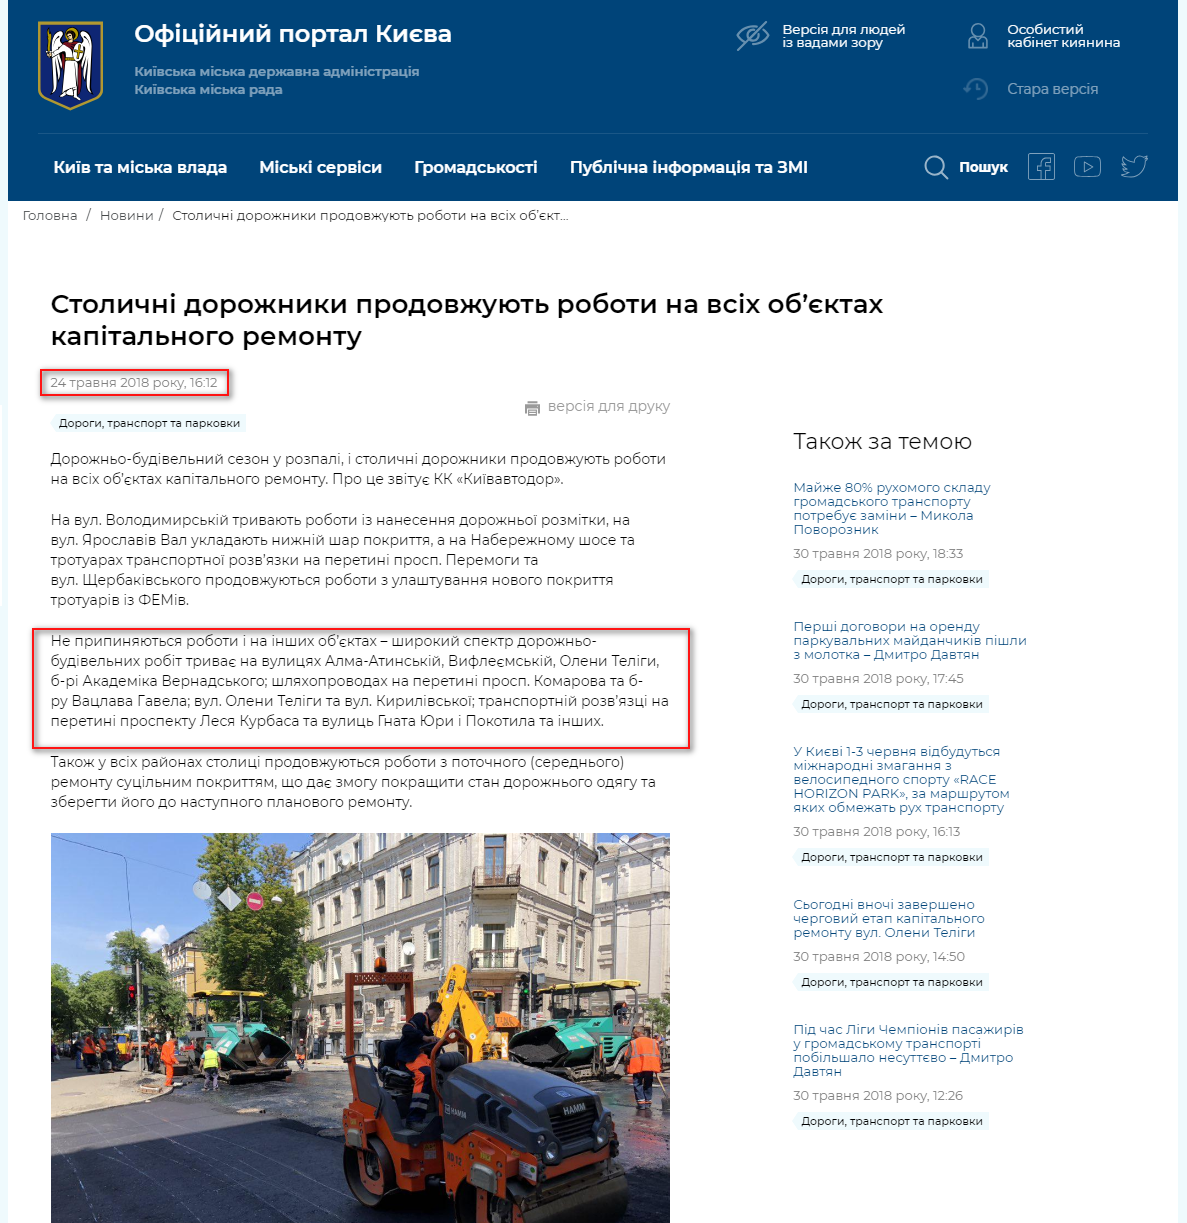 https://kyivcity.gov.ua/news/stolichni_dorozhniki_prodovzhuyut_roboti_na_vsikh_obyektakh_kapitalnogo_remontu.html